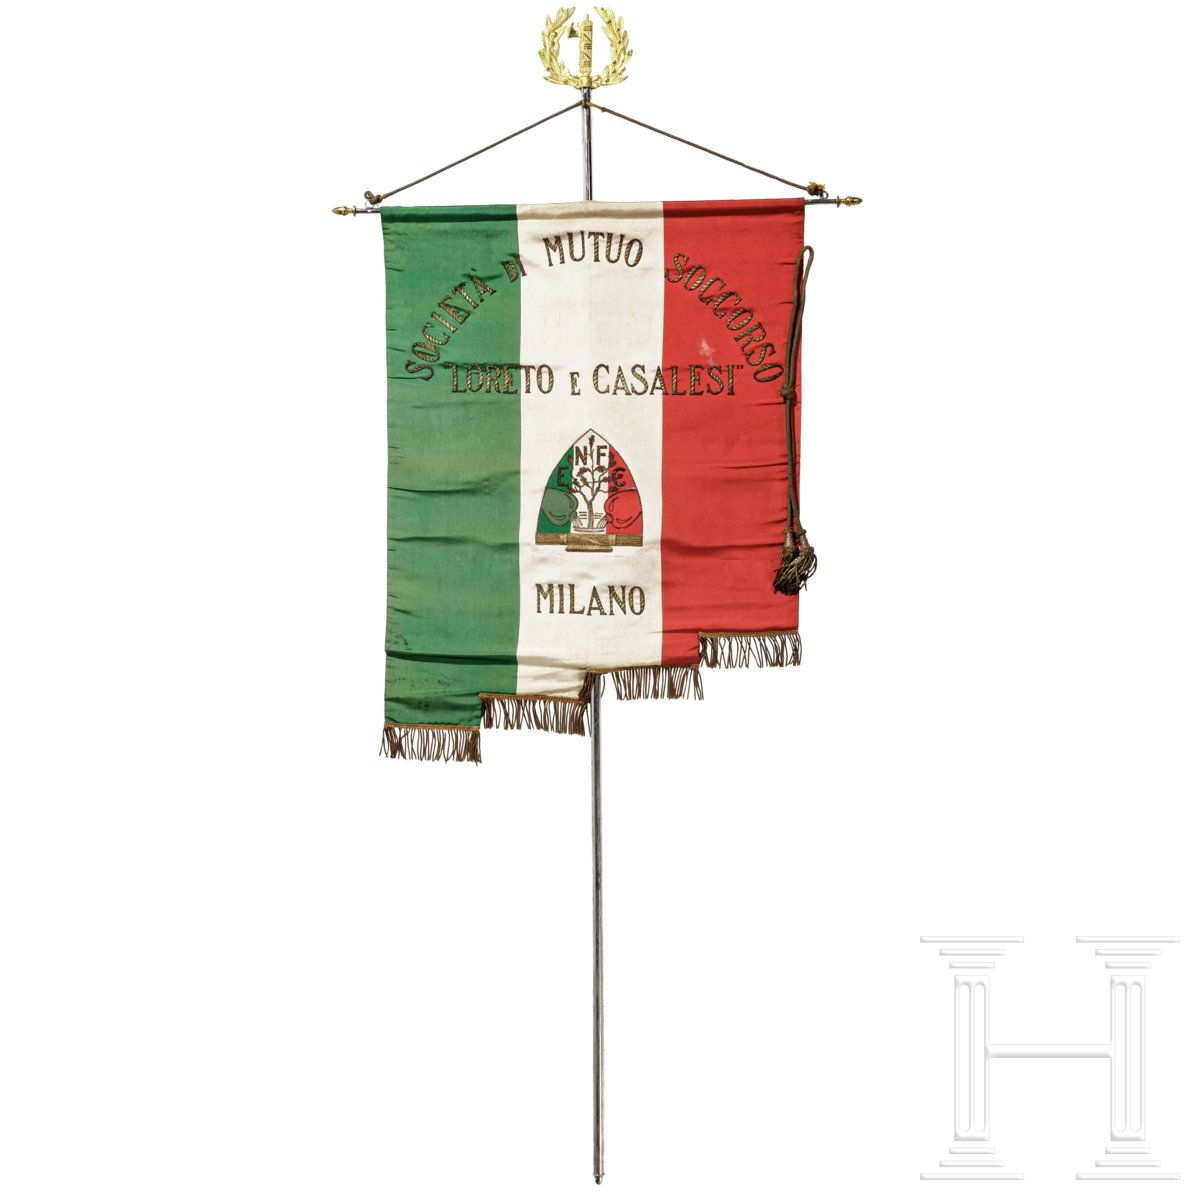 Faschistische Fahne der "Societa di mutuo soccorso Loreto e Casalesi Milano"